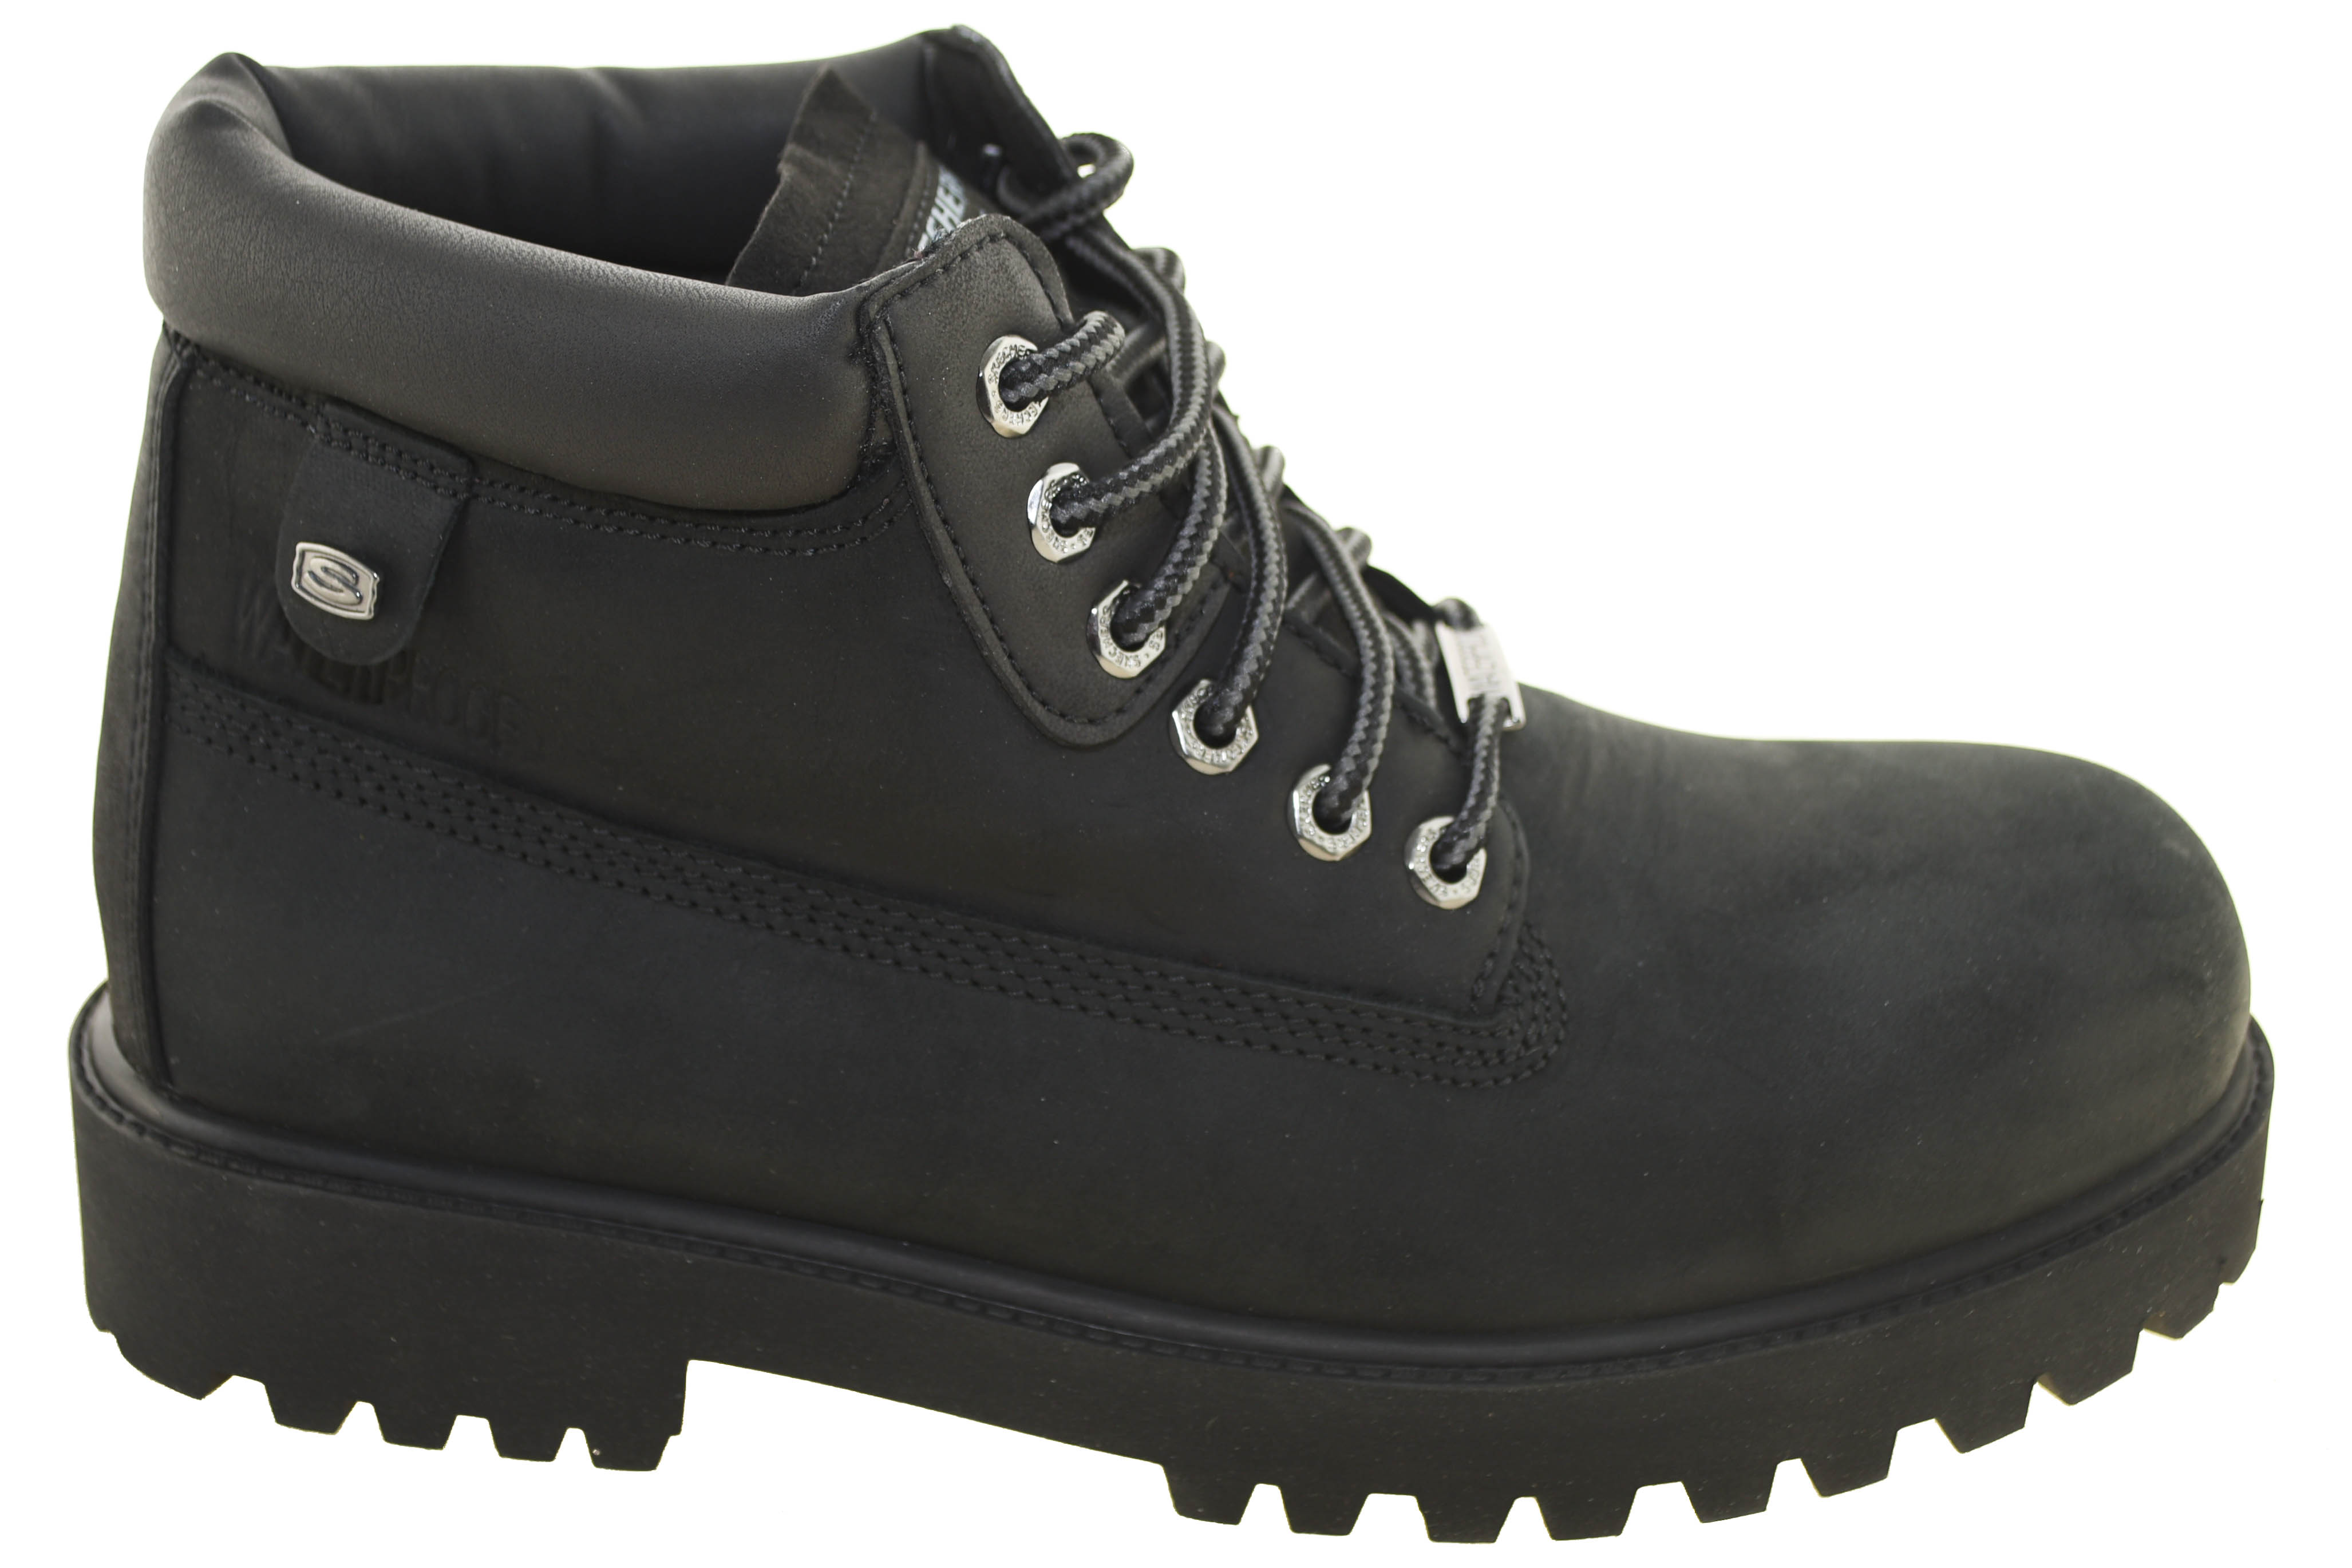 Skechers Men's Verdict Waterproof Boots Black 4442 BOL | eBay